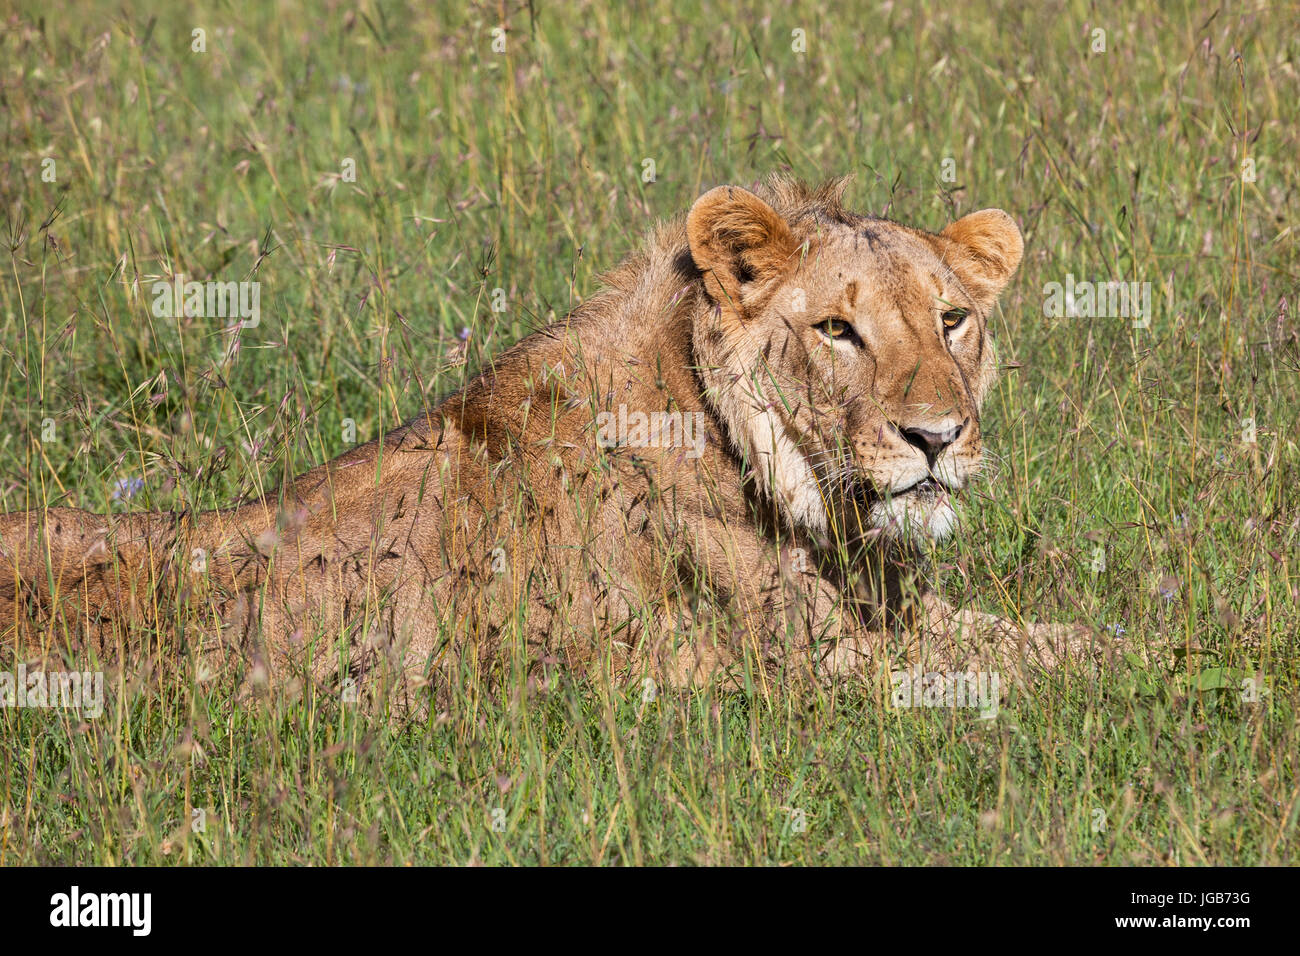 Young lion, Masai mara, Kenya. Stock Photo